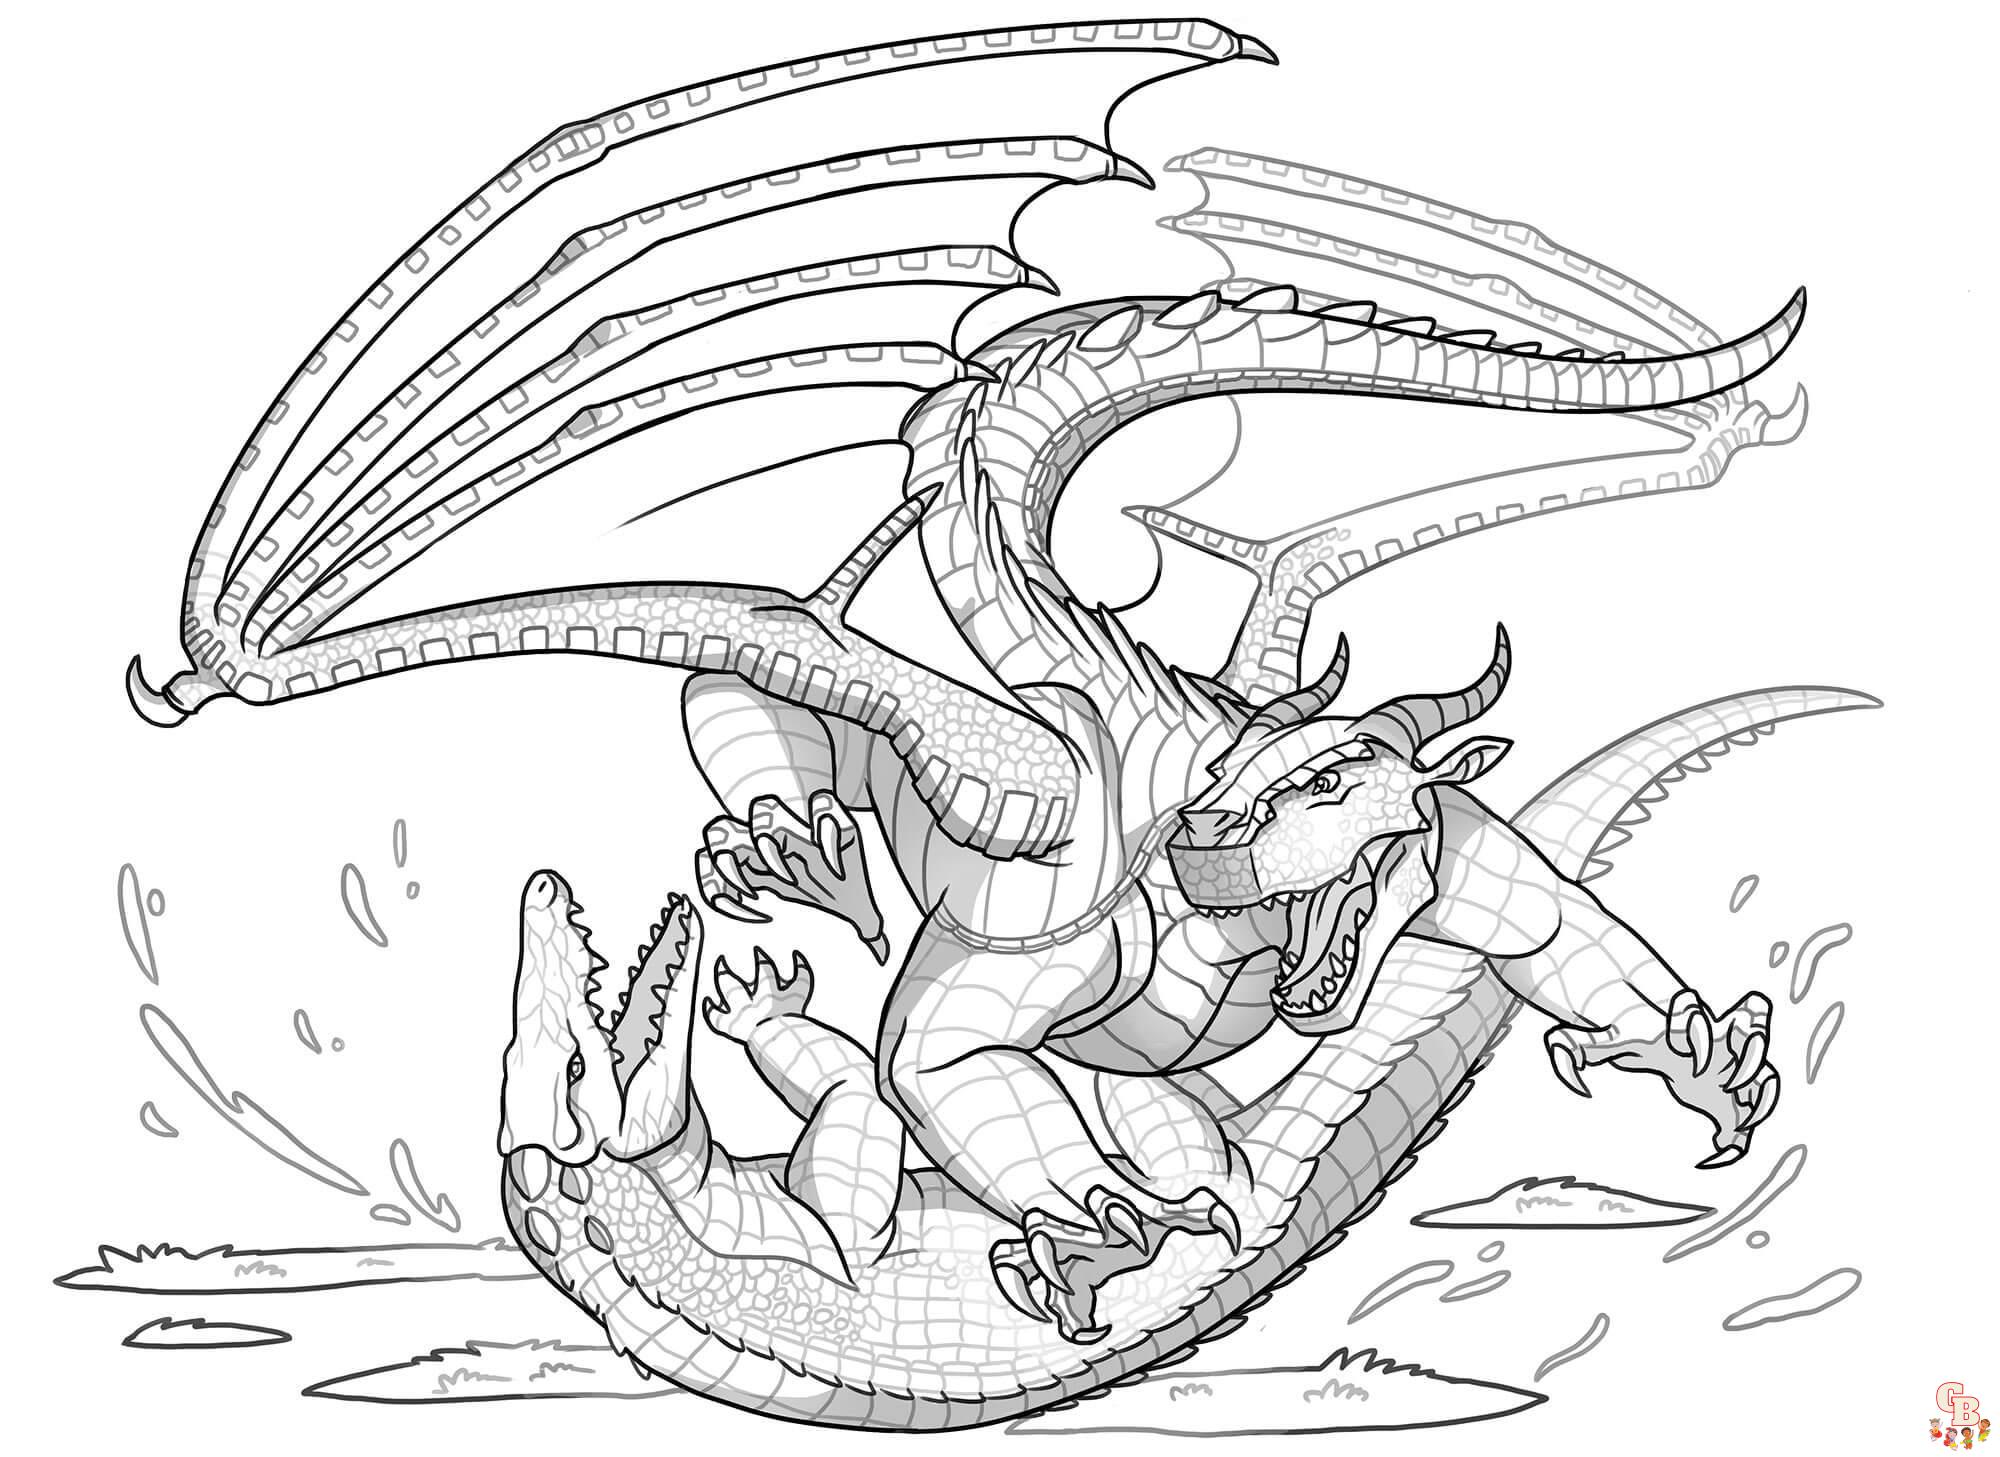 Malvorlagen Mudwing Dragon von Wings of Fire 1